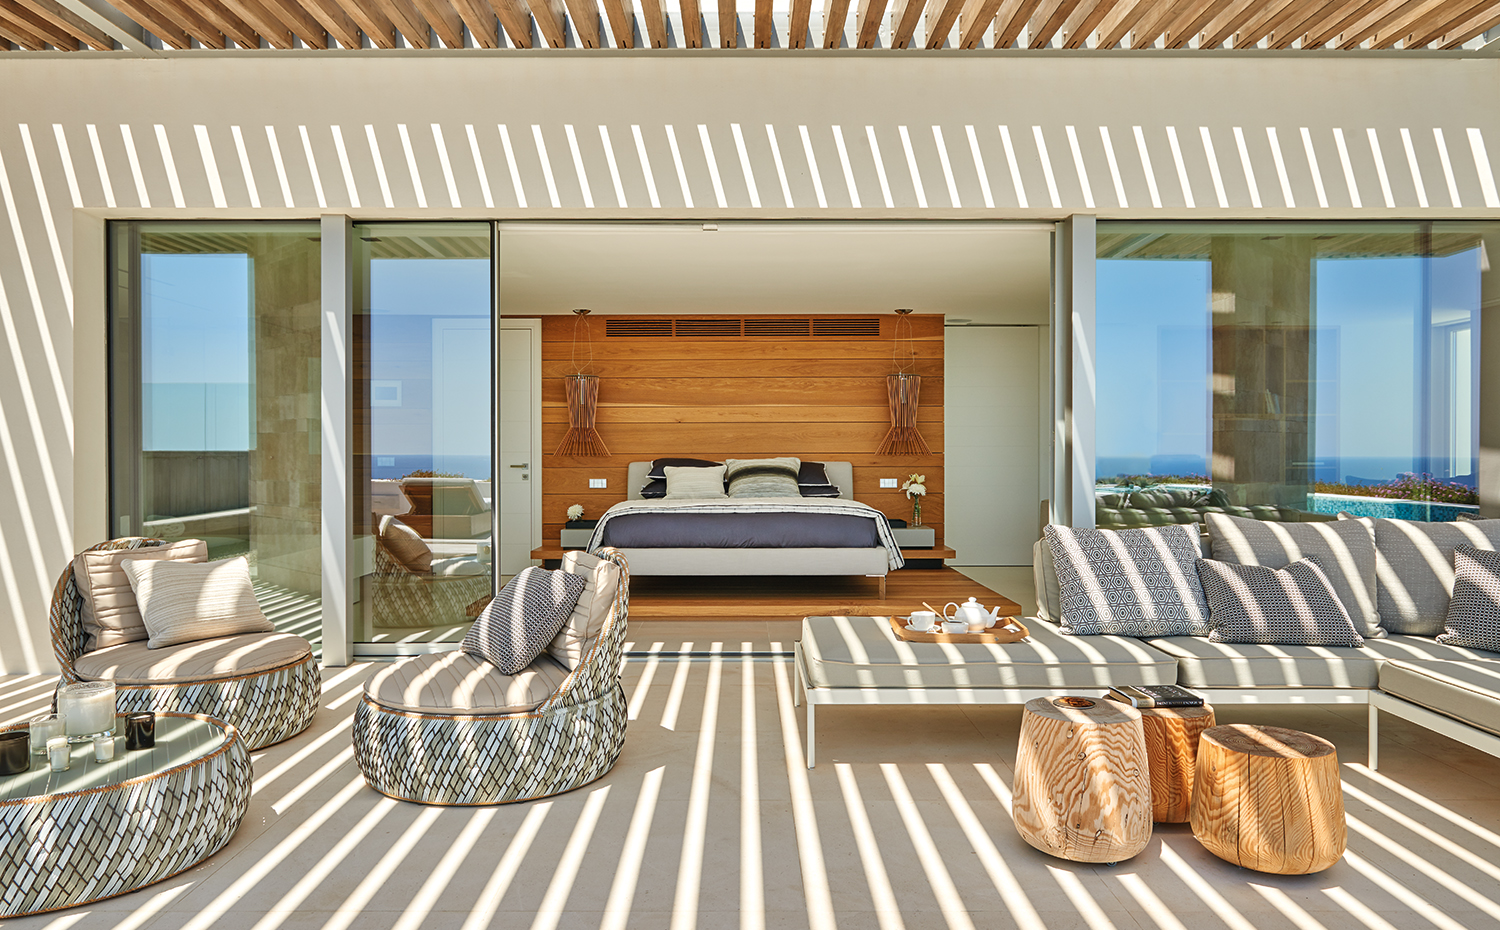 AyD-Saota(Ibiza)2237. En la terraza, sillones y mesita Dala, diseño de Stephen Burks para Dedon. Sofá Box y mesitas de madera maciza, de Okha. En el dormitorio, lámparas Allegretto, de Foscarini, y cabecero tapizado con tejido, de Romo